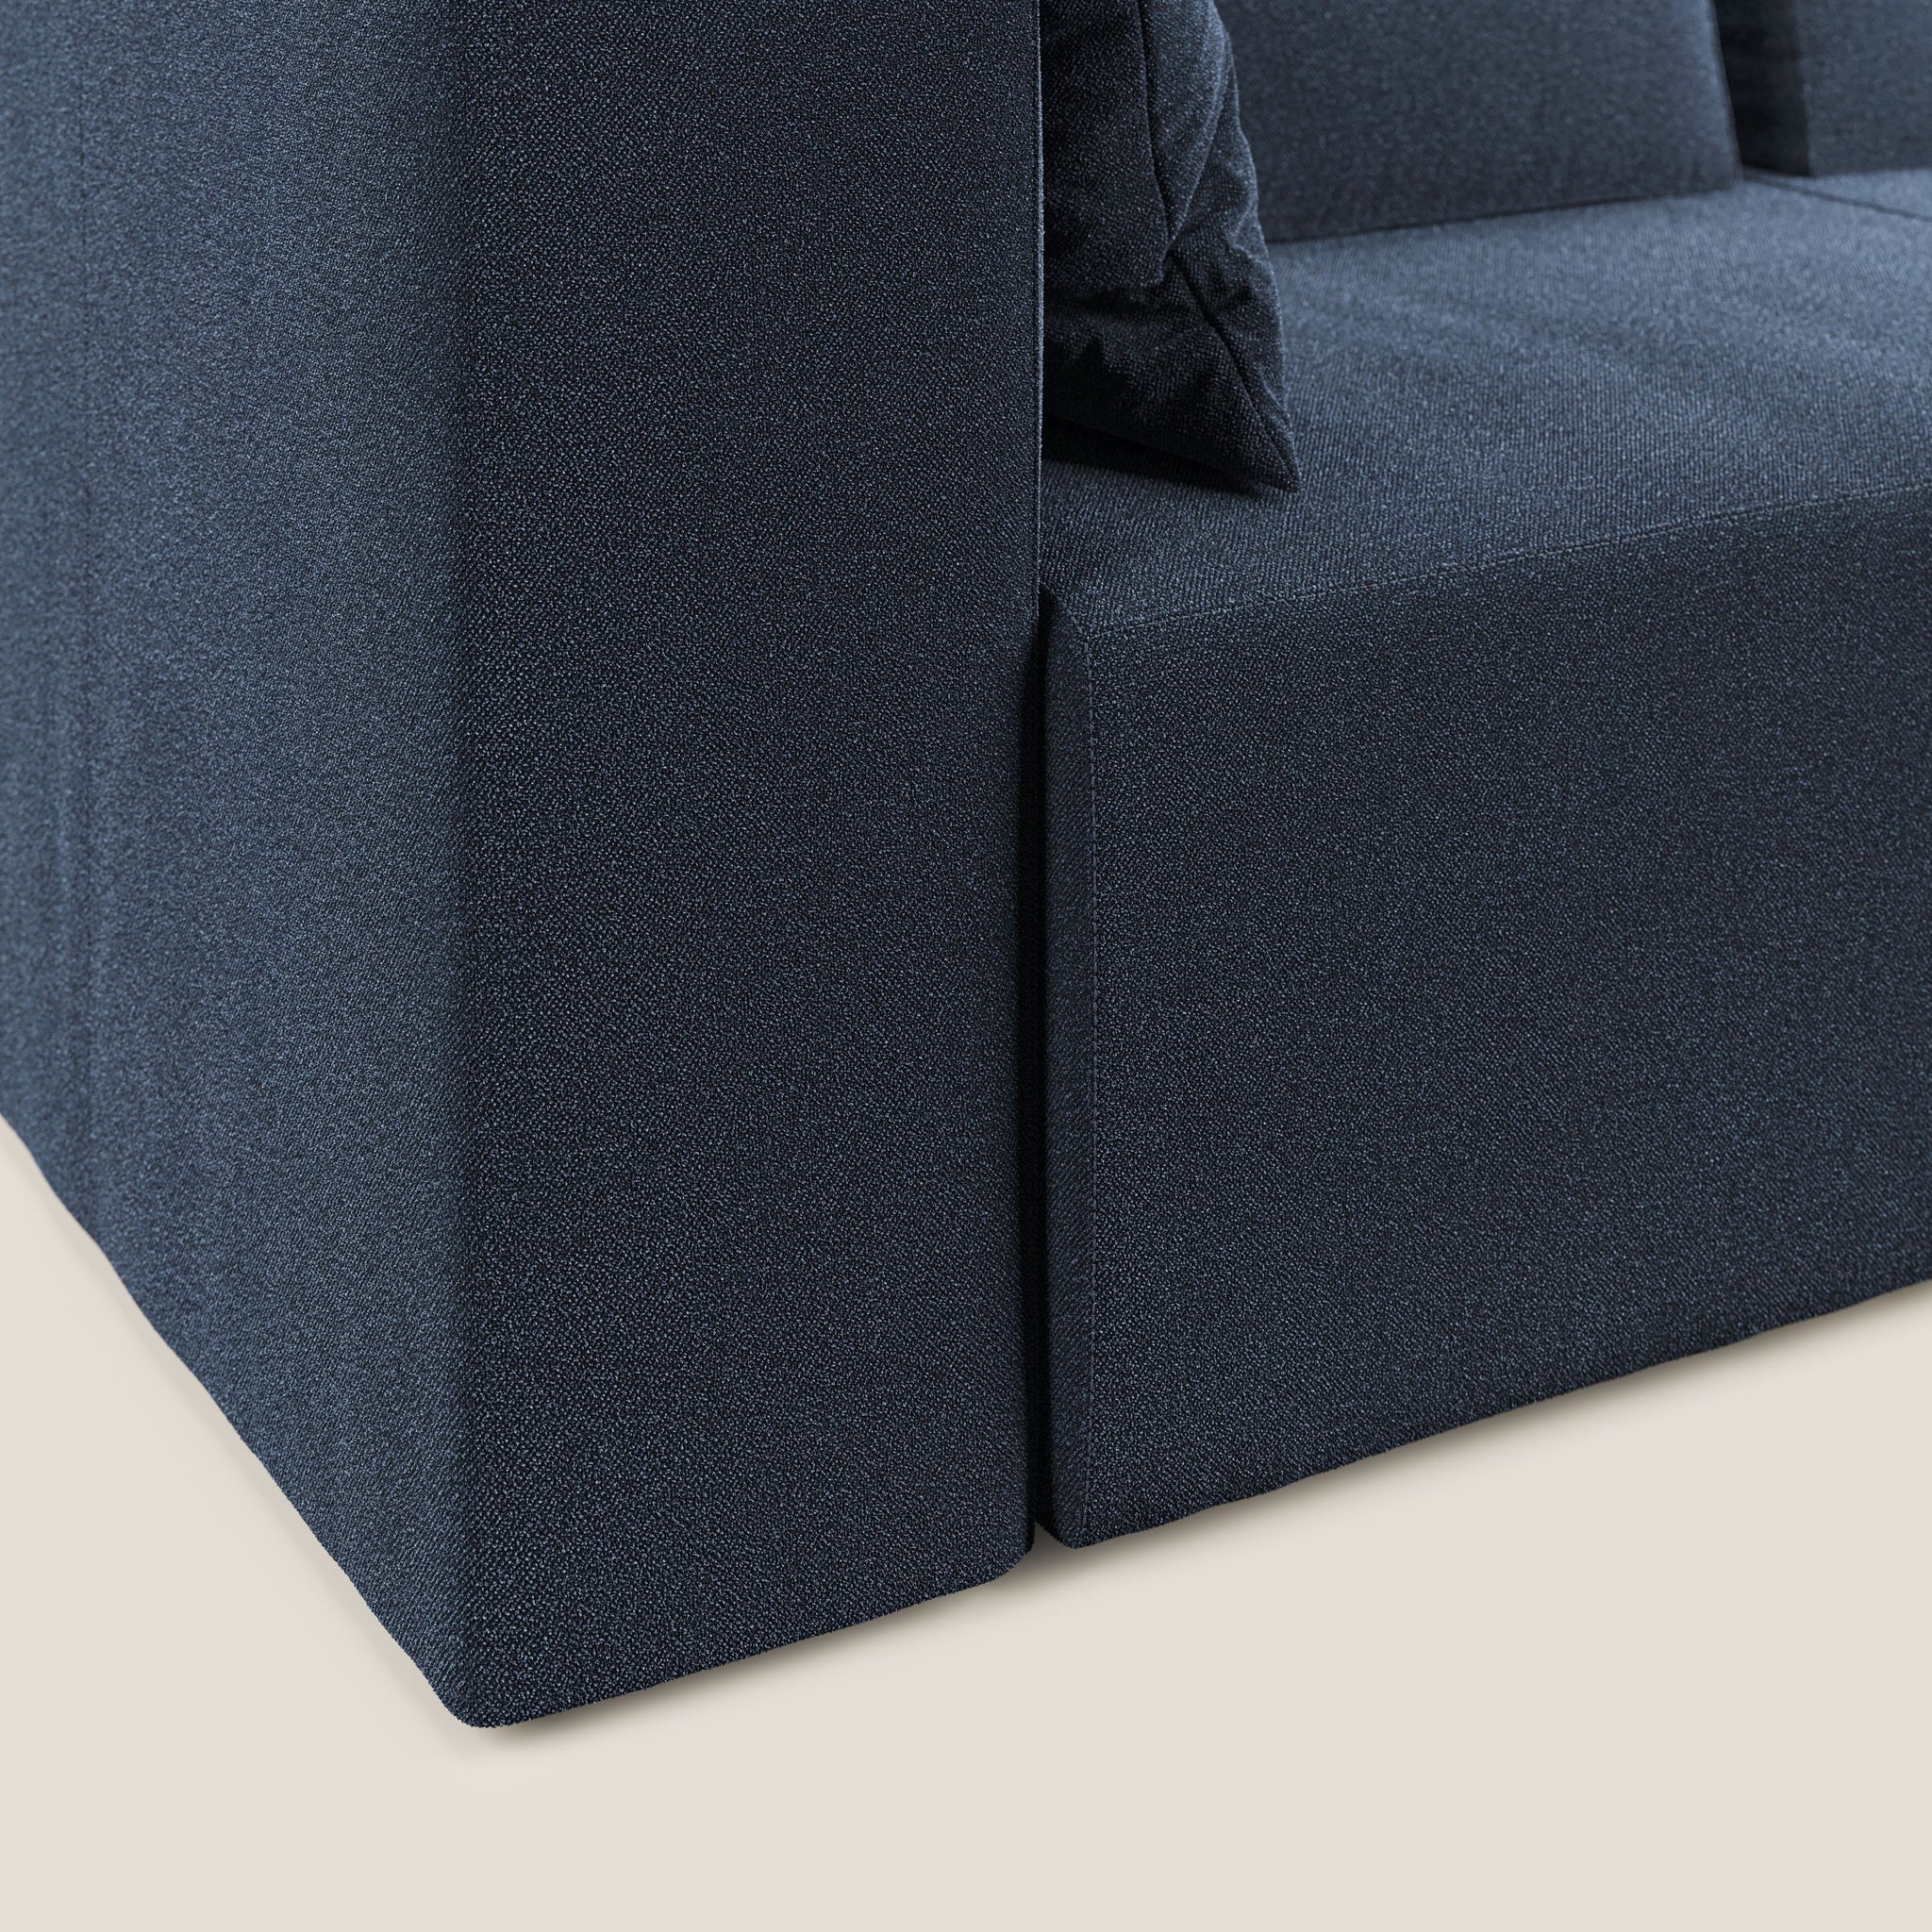 Nettuno divano moderno componibile in morbido tessuto bouclè T07